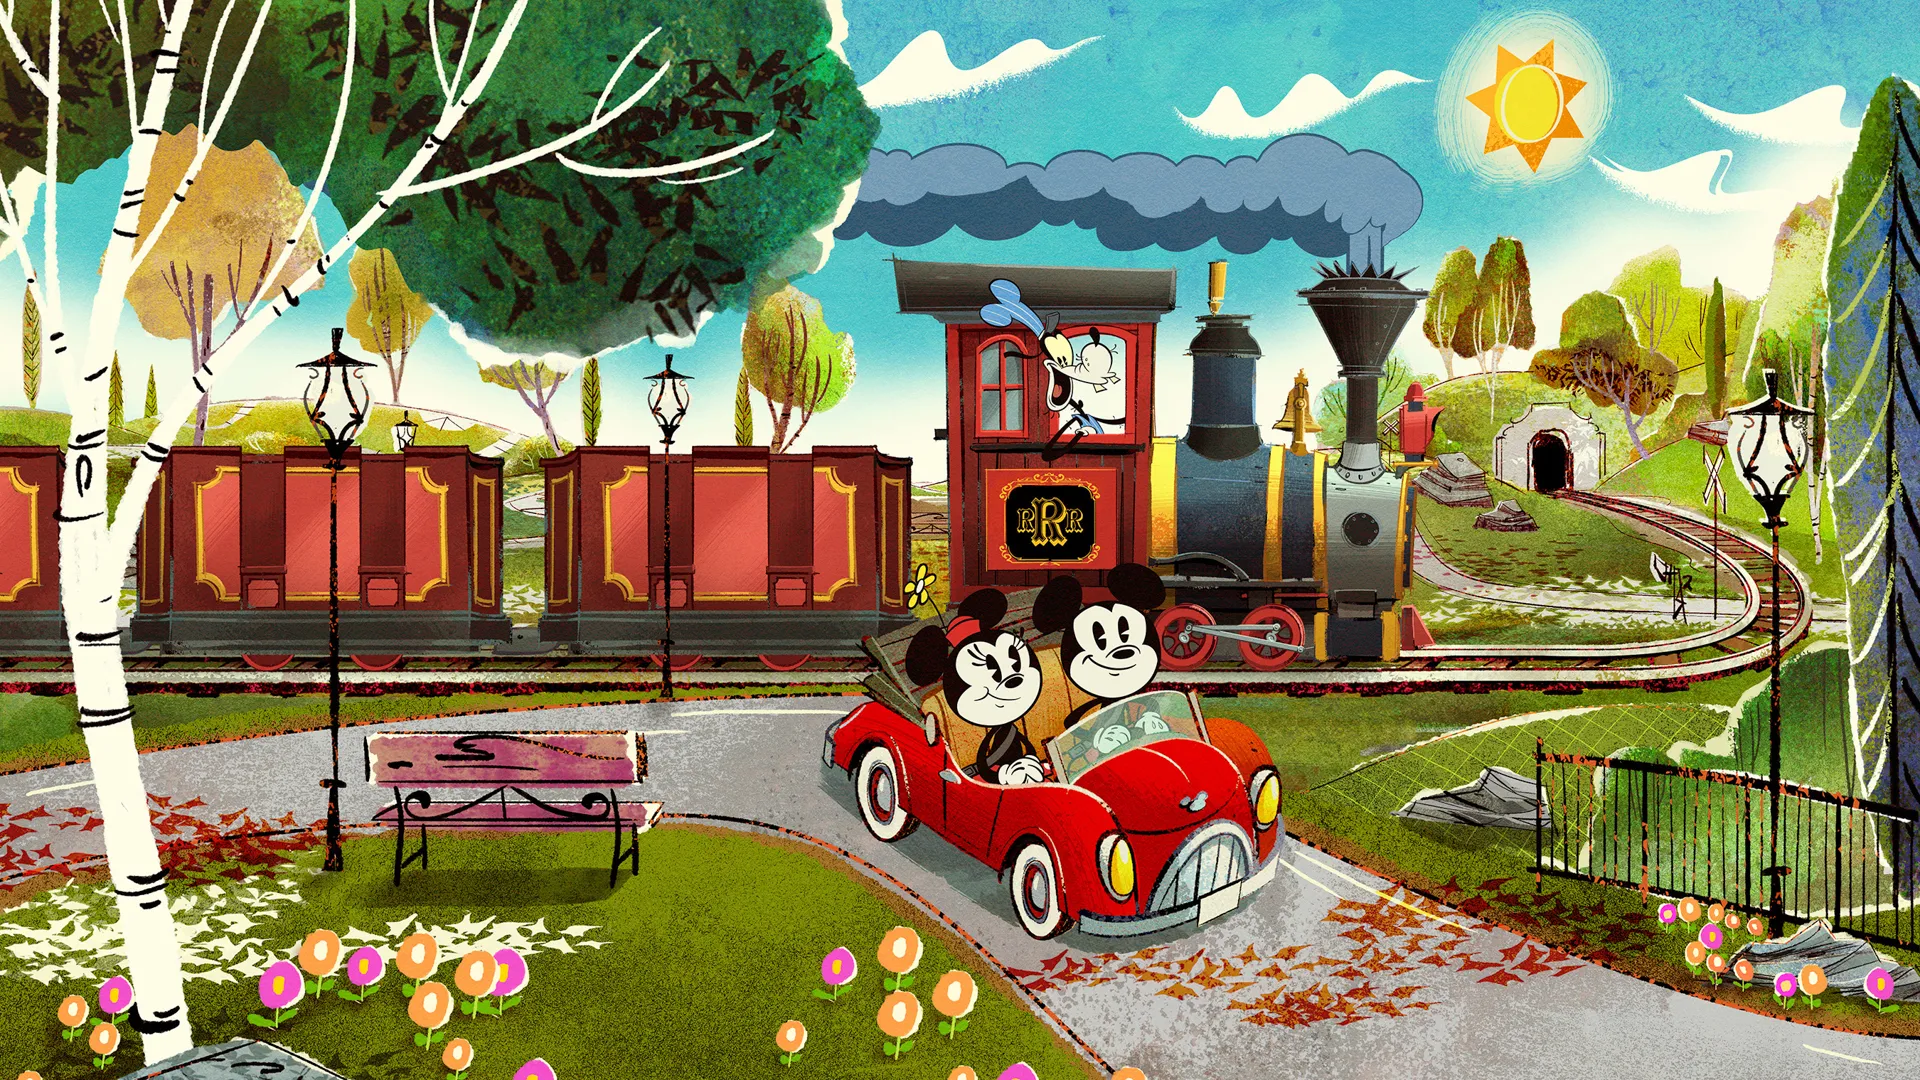 Micke和米妮失控的铁路沃特迪斯尼世界度假区概念艺术